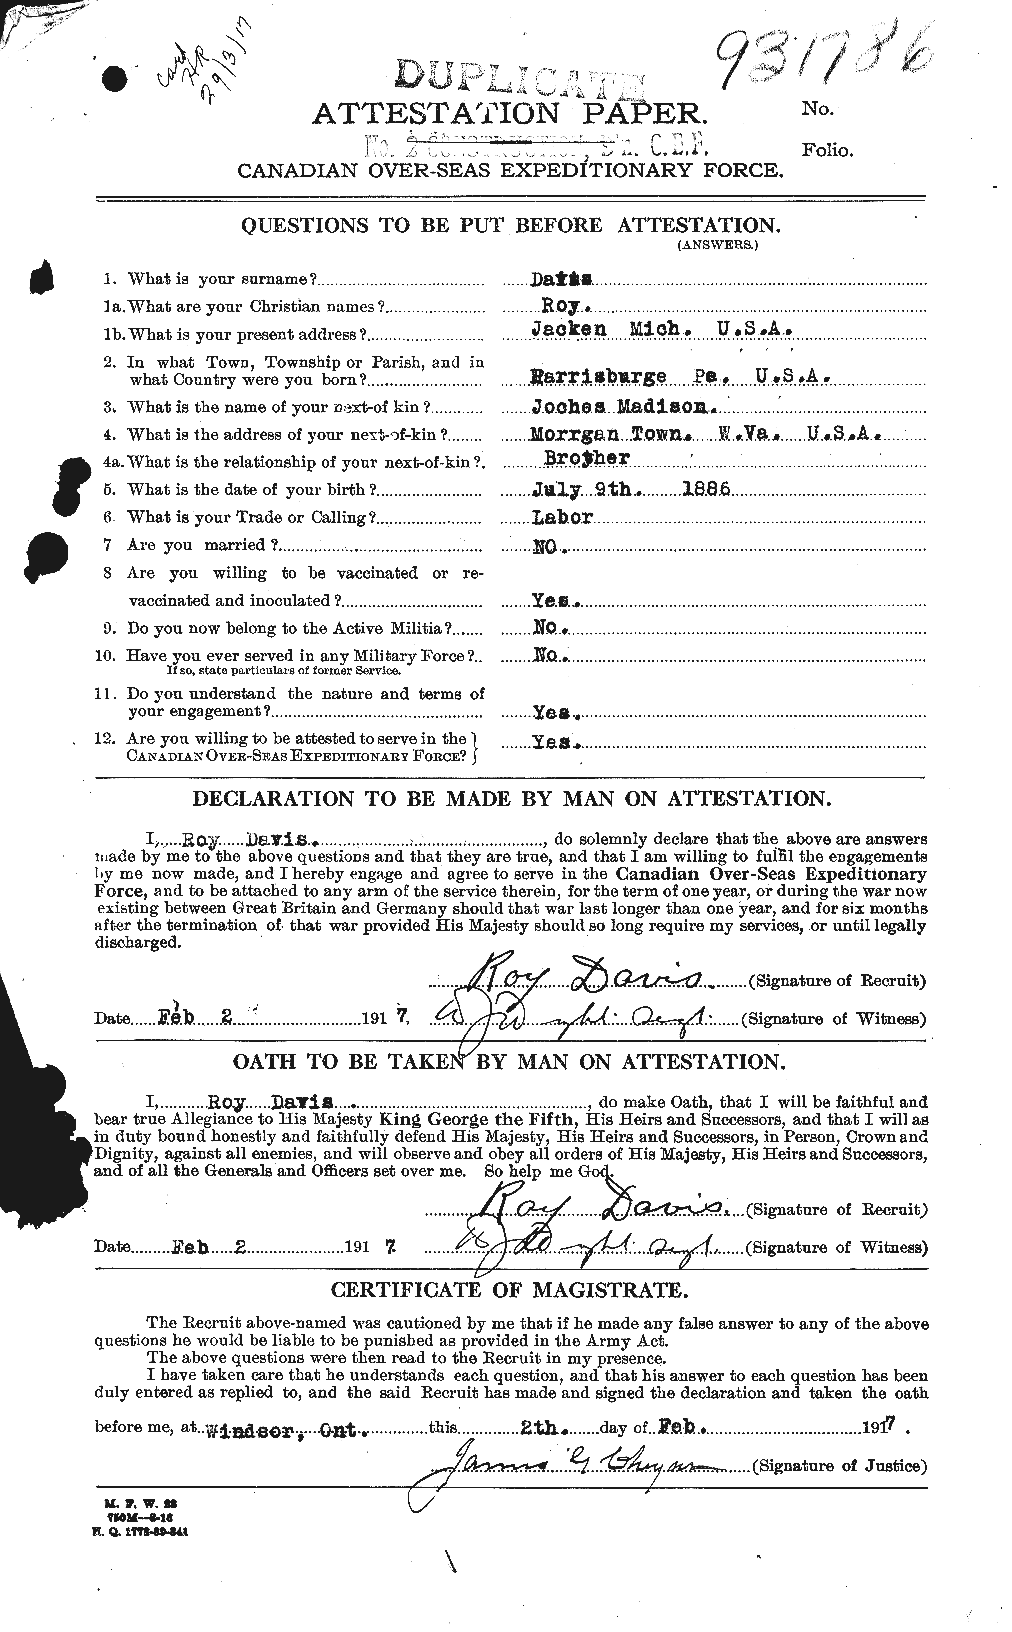 Dossiers du Personnel de la Première Guerre mondiale - CEC 279175a